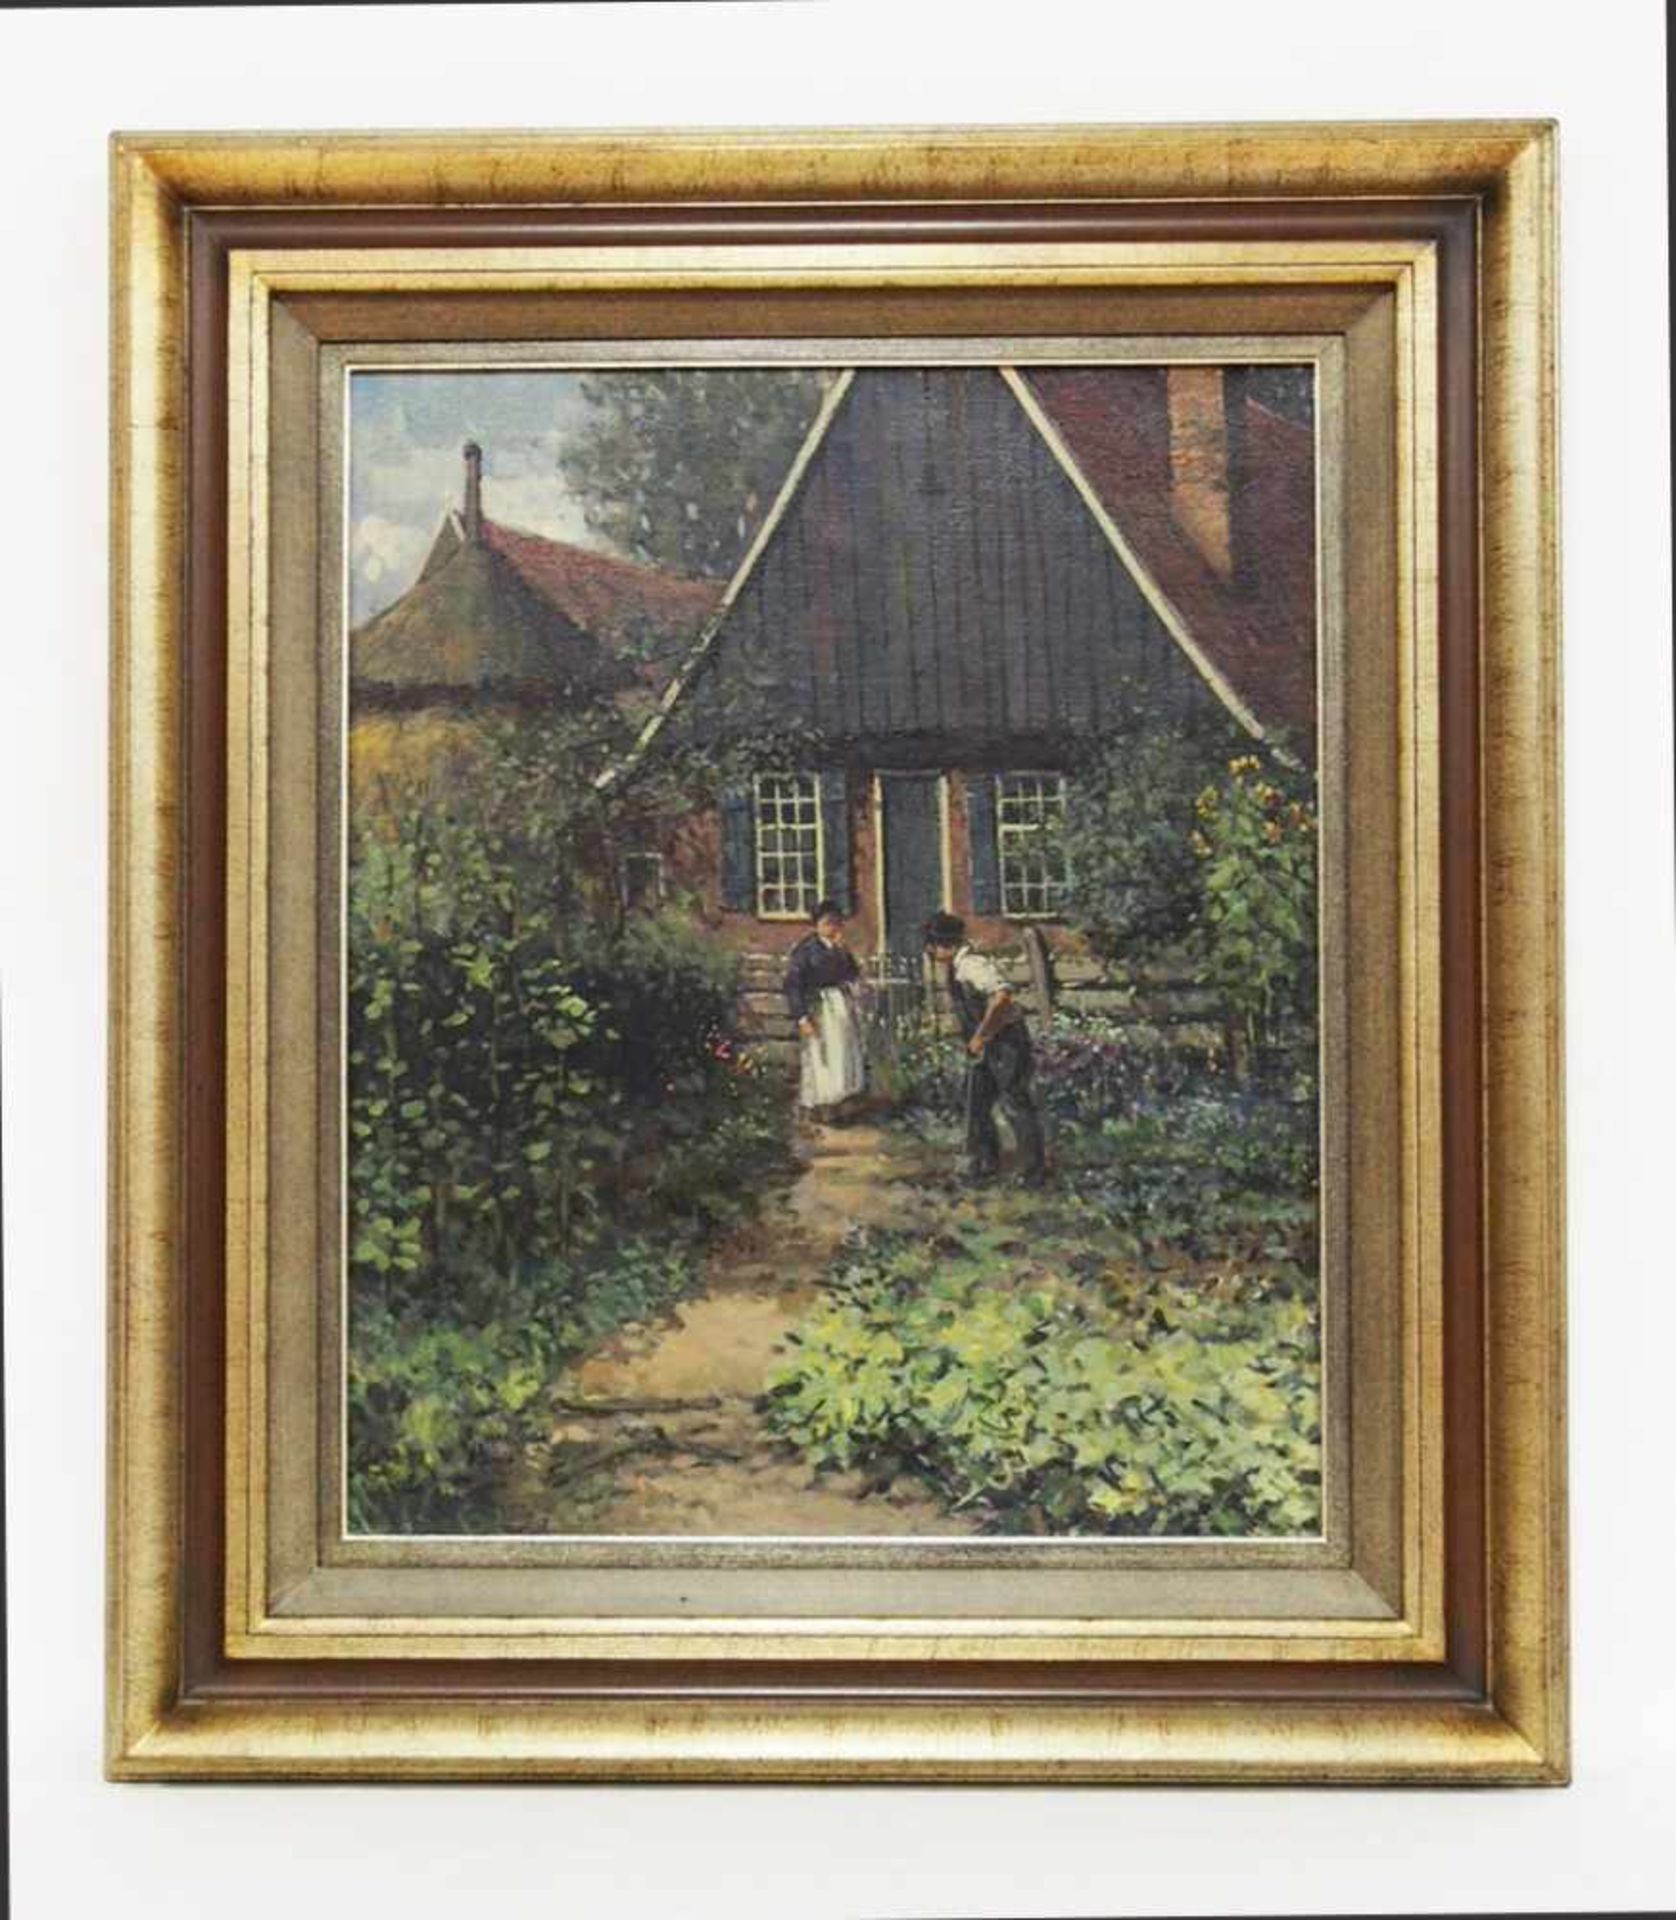 LOON, Kees van1930-2004Vor dem BauernhausÖl auf Leinwand, signiert unten links, 58 x 48 cm, Rahmen - Bild 2 aus 3